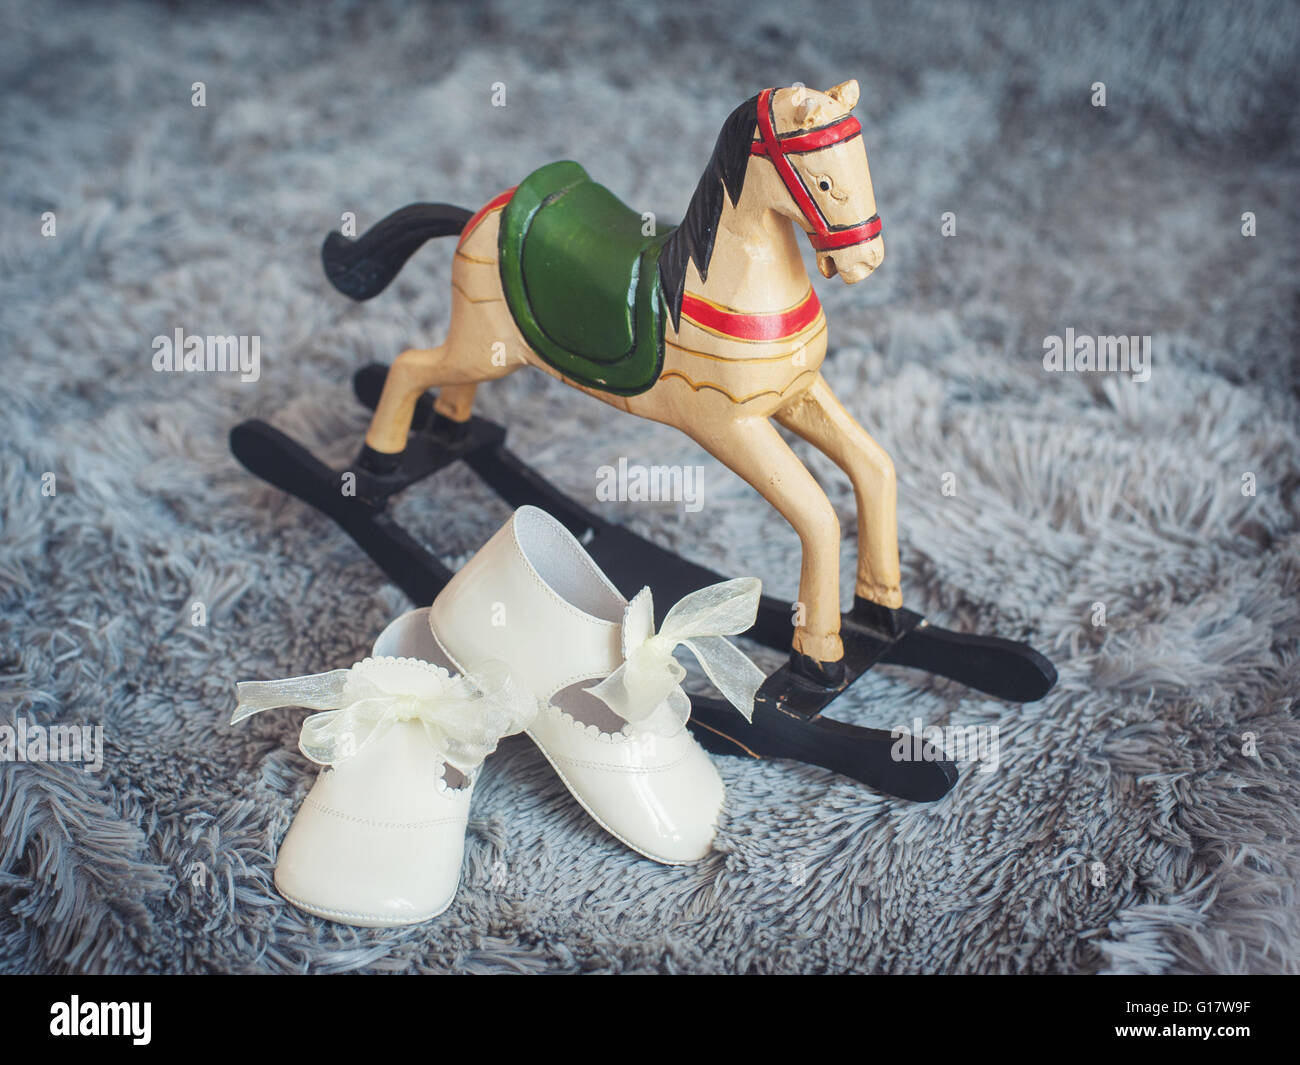 Calzature per bambini e ragazzi giocattolo del cavallo a dondolo Foto Stock